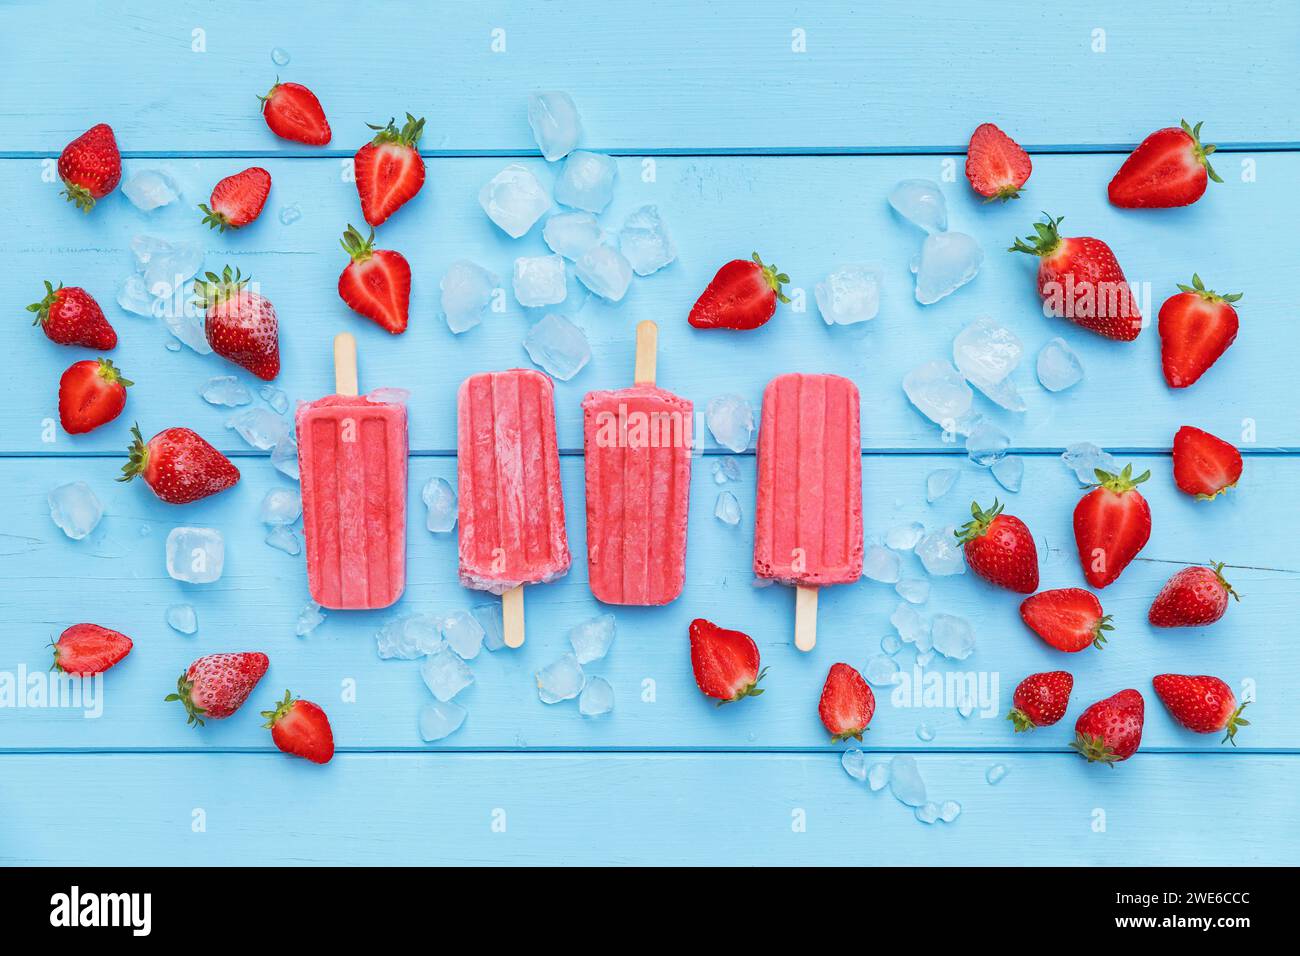 Studio shot of homemade strawberry flavored ice Stock Photo